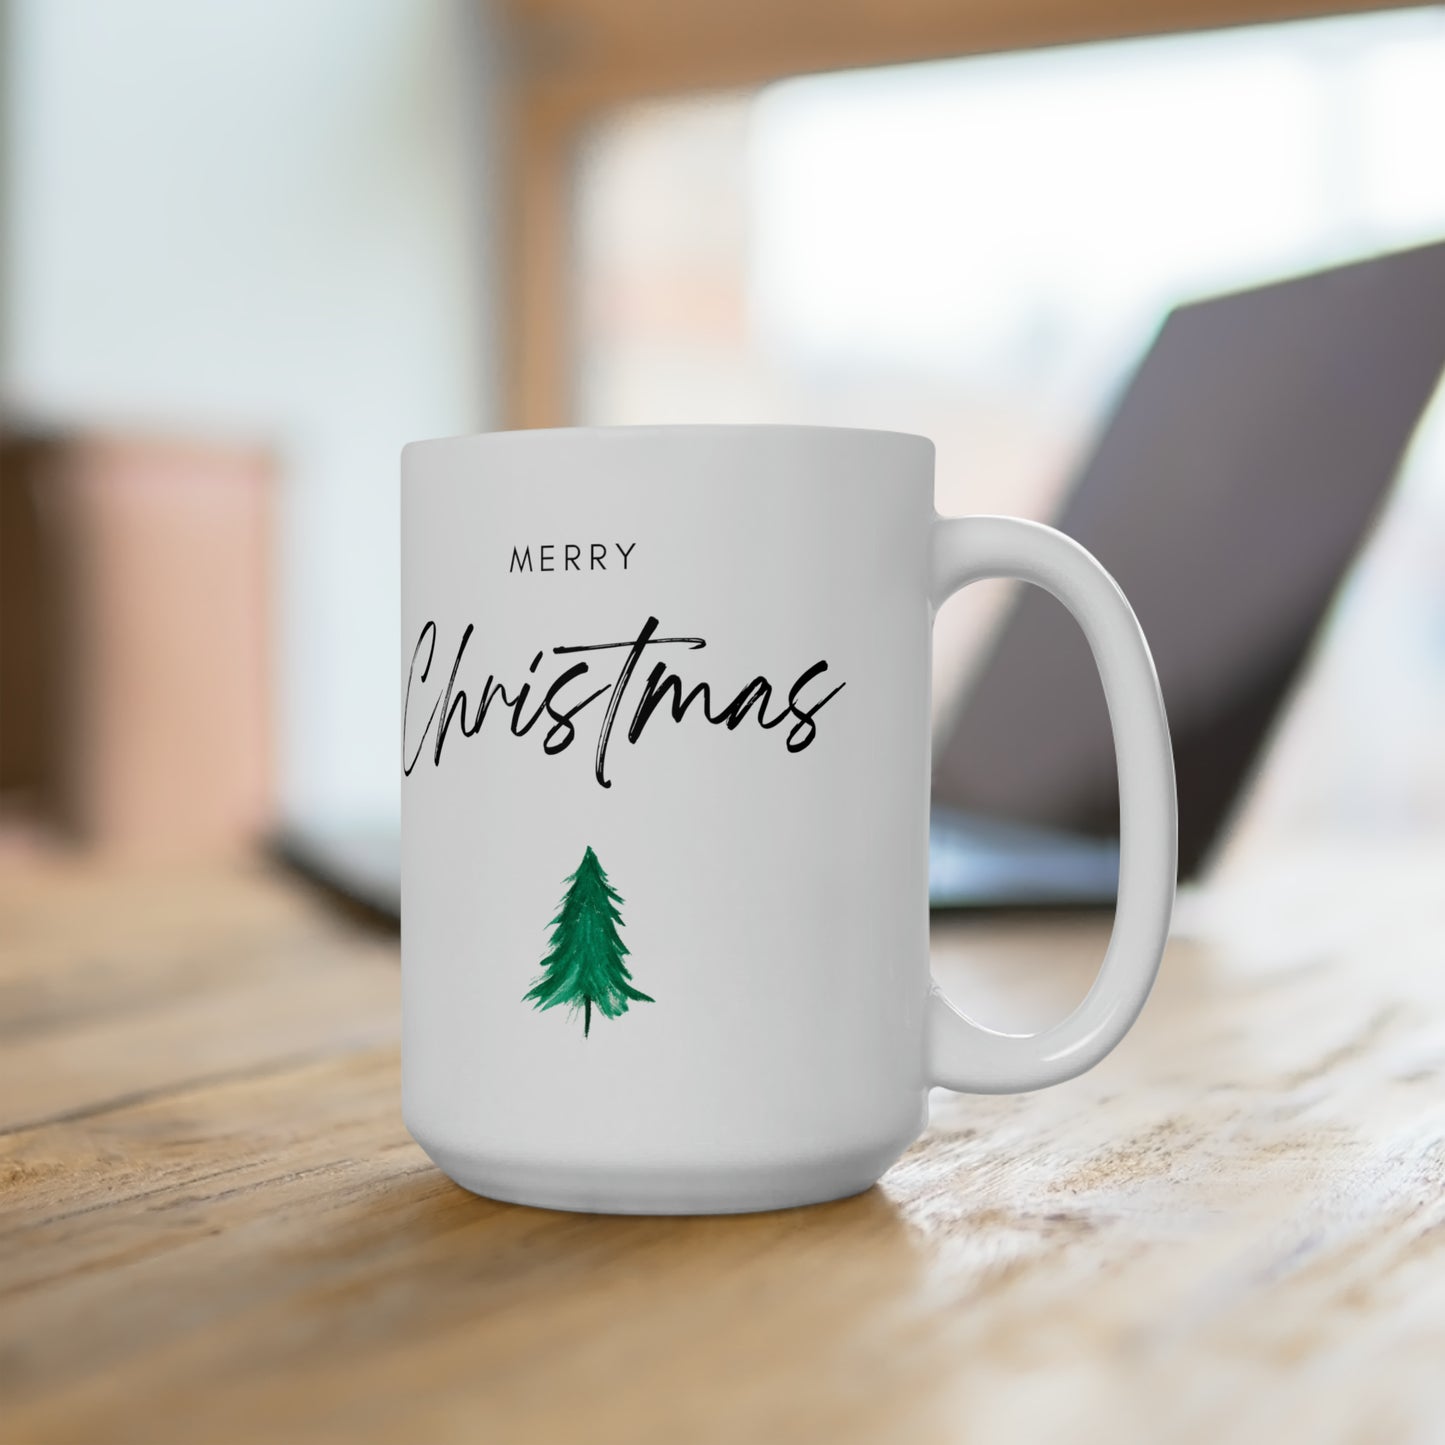 Merry Christmas with Tree Printed Ceramic Mug, 15oz